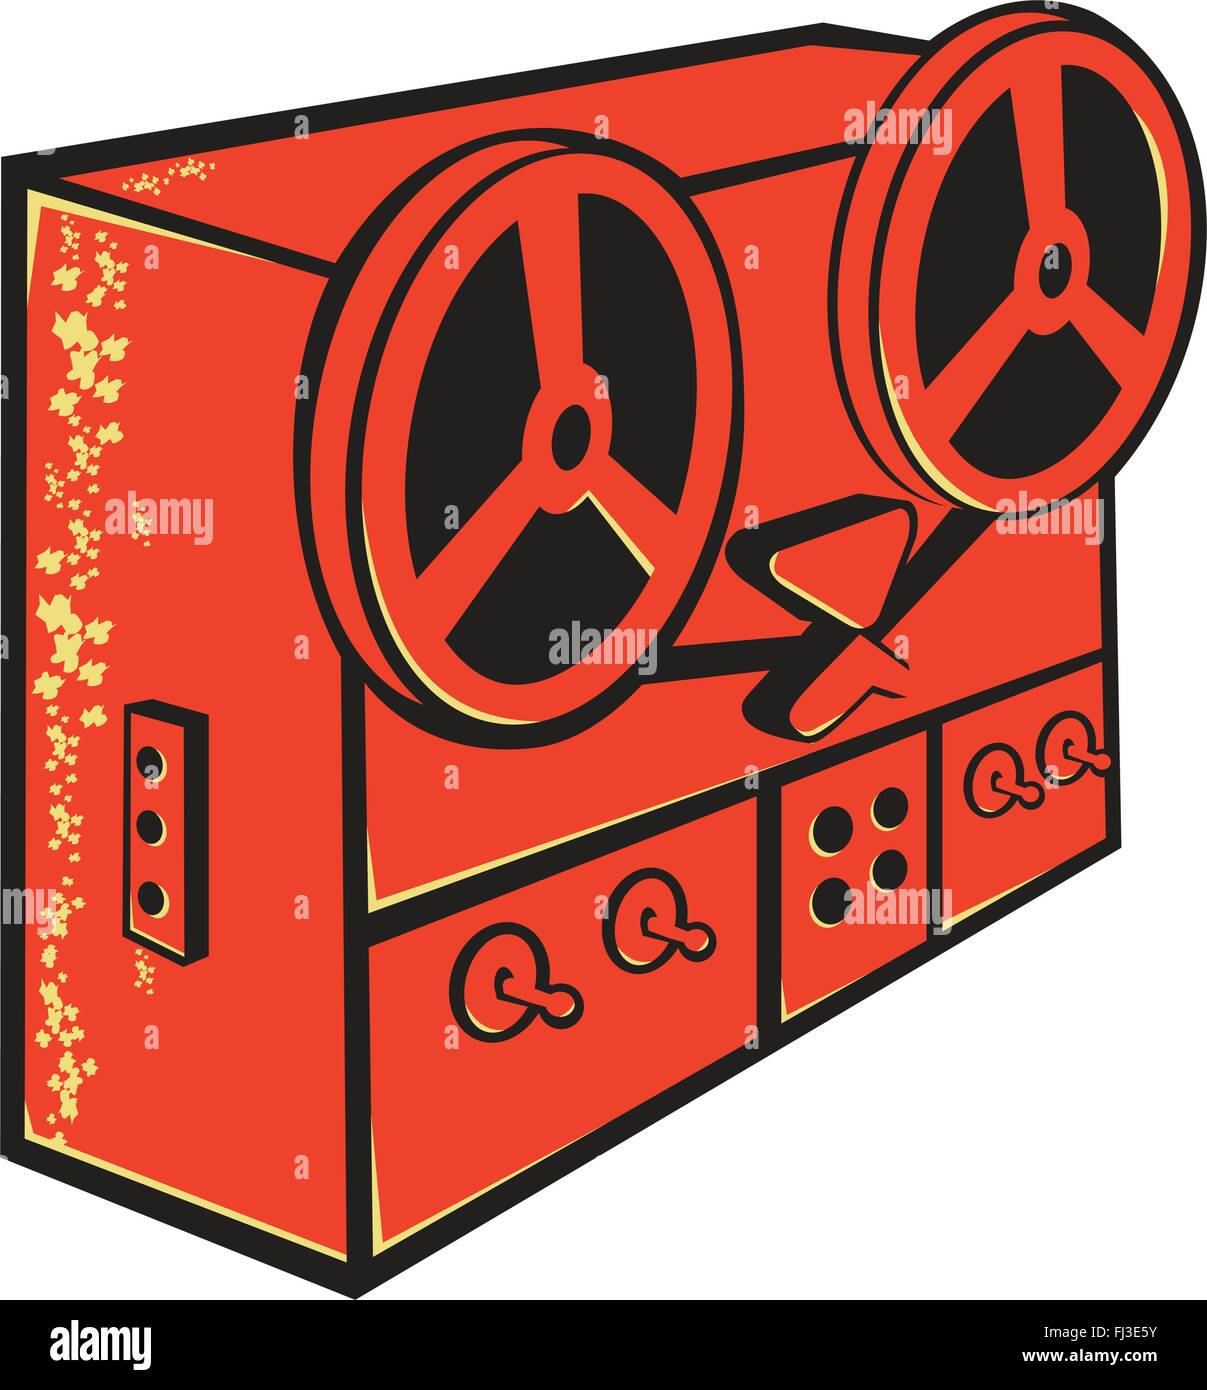 Illustrazione vettoriale di un registratore a nastro e mangianastri, da bobina a bobina piastra magnetofonica, deck a cassetta o nastro macchina fatto in stile retrò su Illustrazione Vettoriale